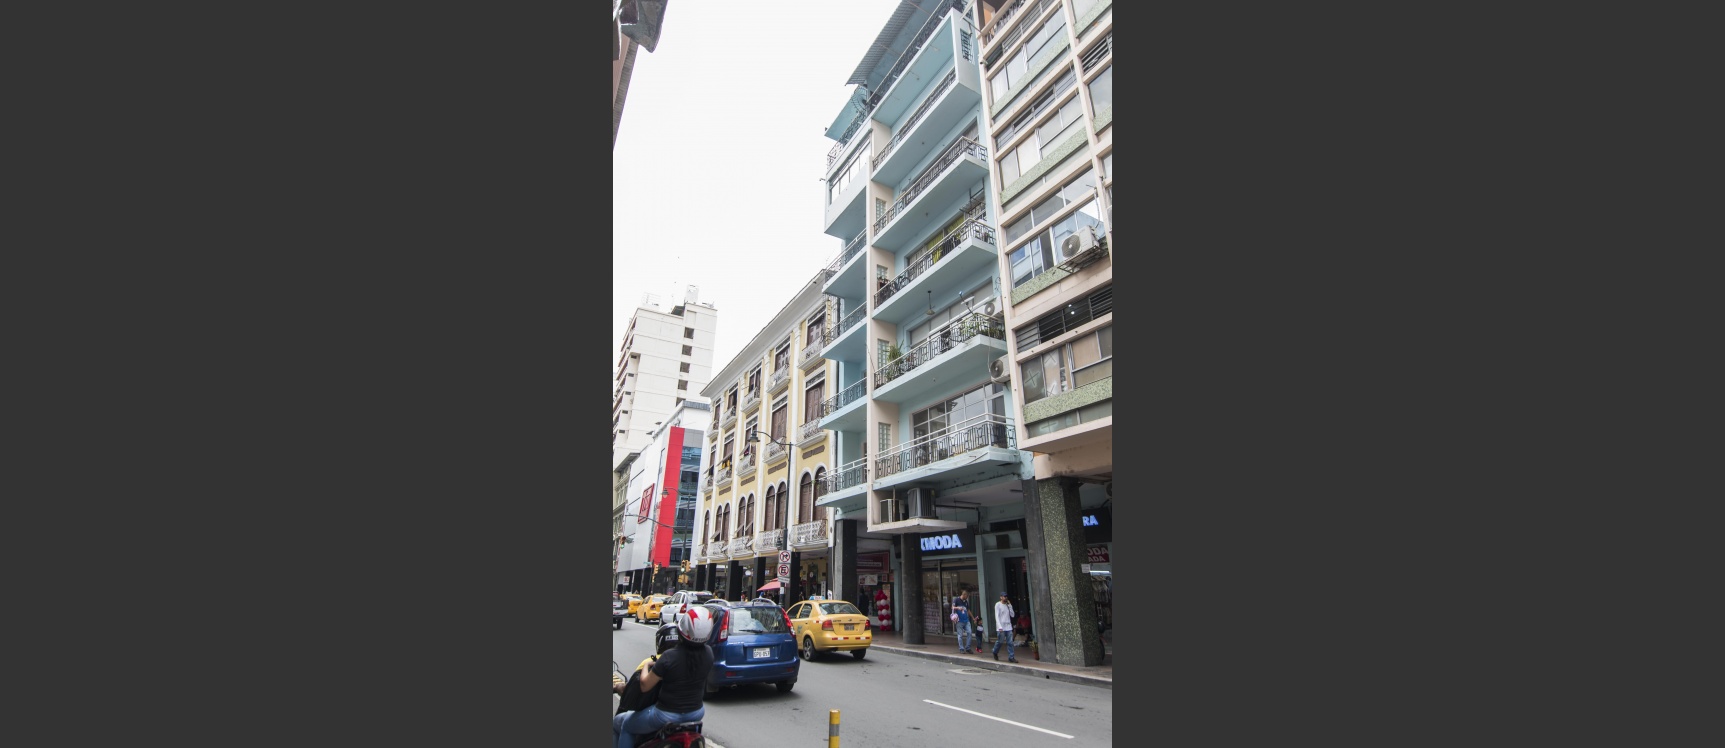 GeoBienes - Edificio de locales comerciales en venta ubicado en el Centro de Guayaquil - Plusvalia Guayaquil Casas de venta y alquiler Inmobiliaria Ecuador